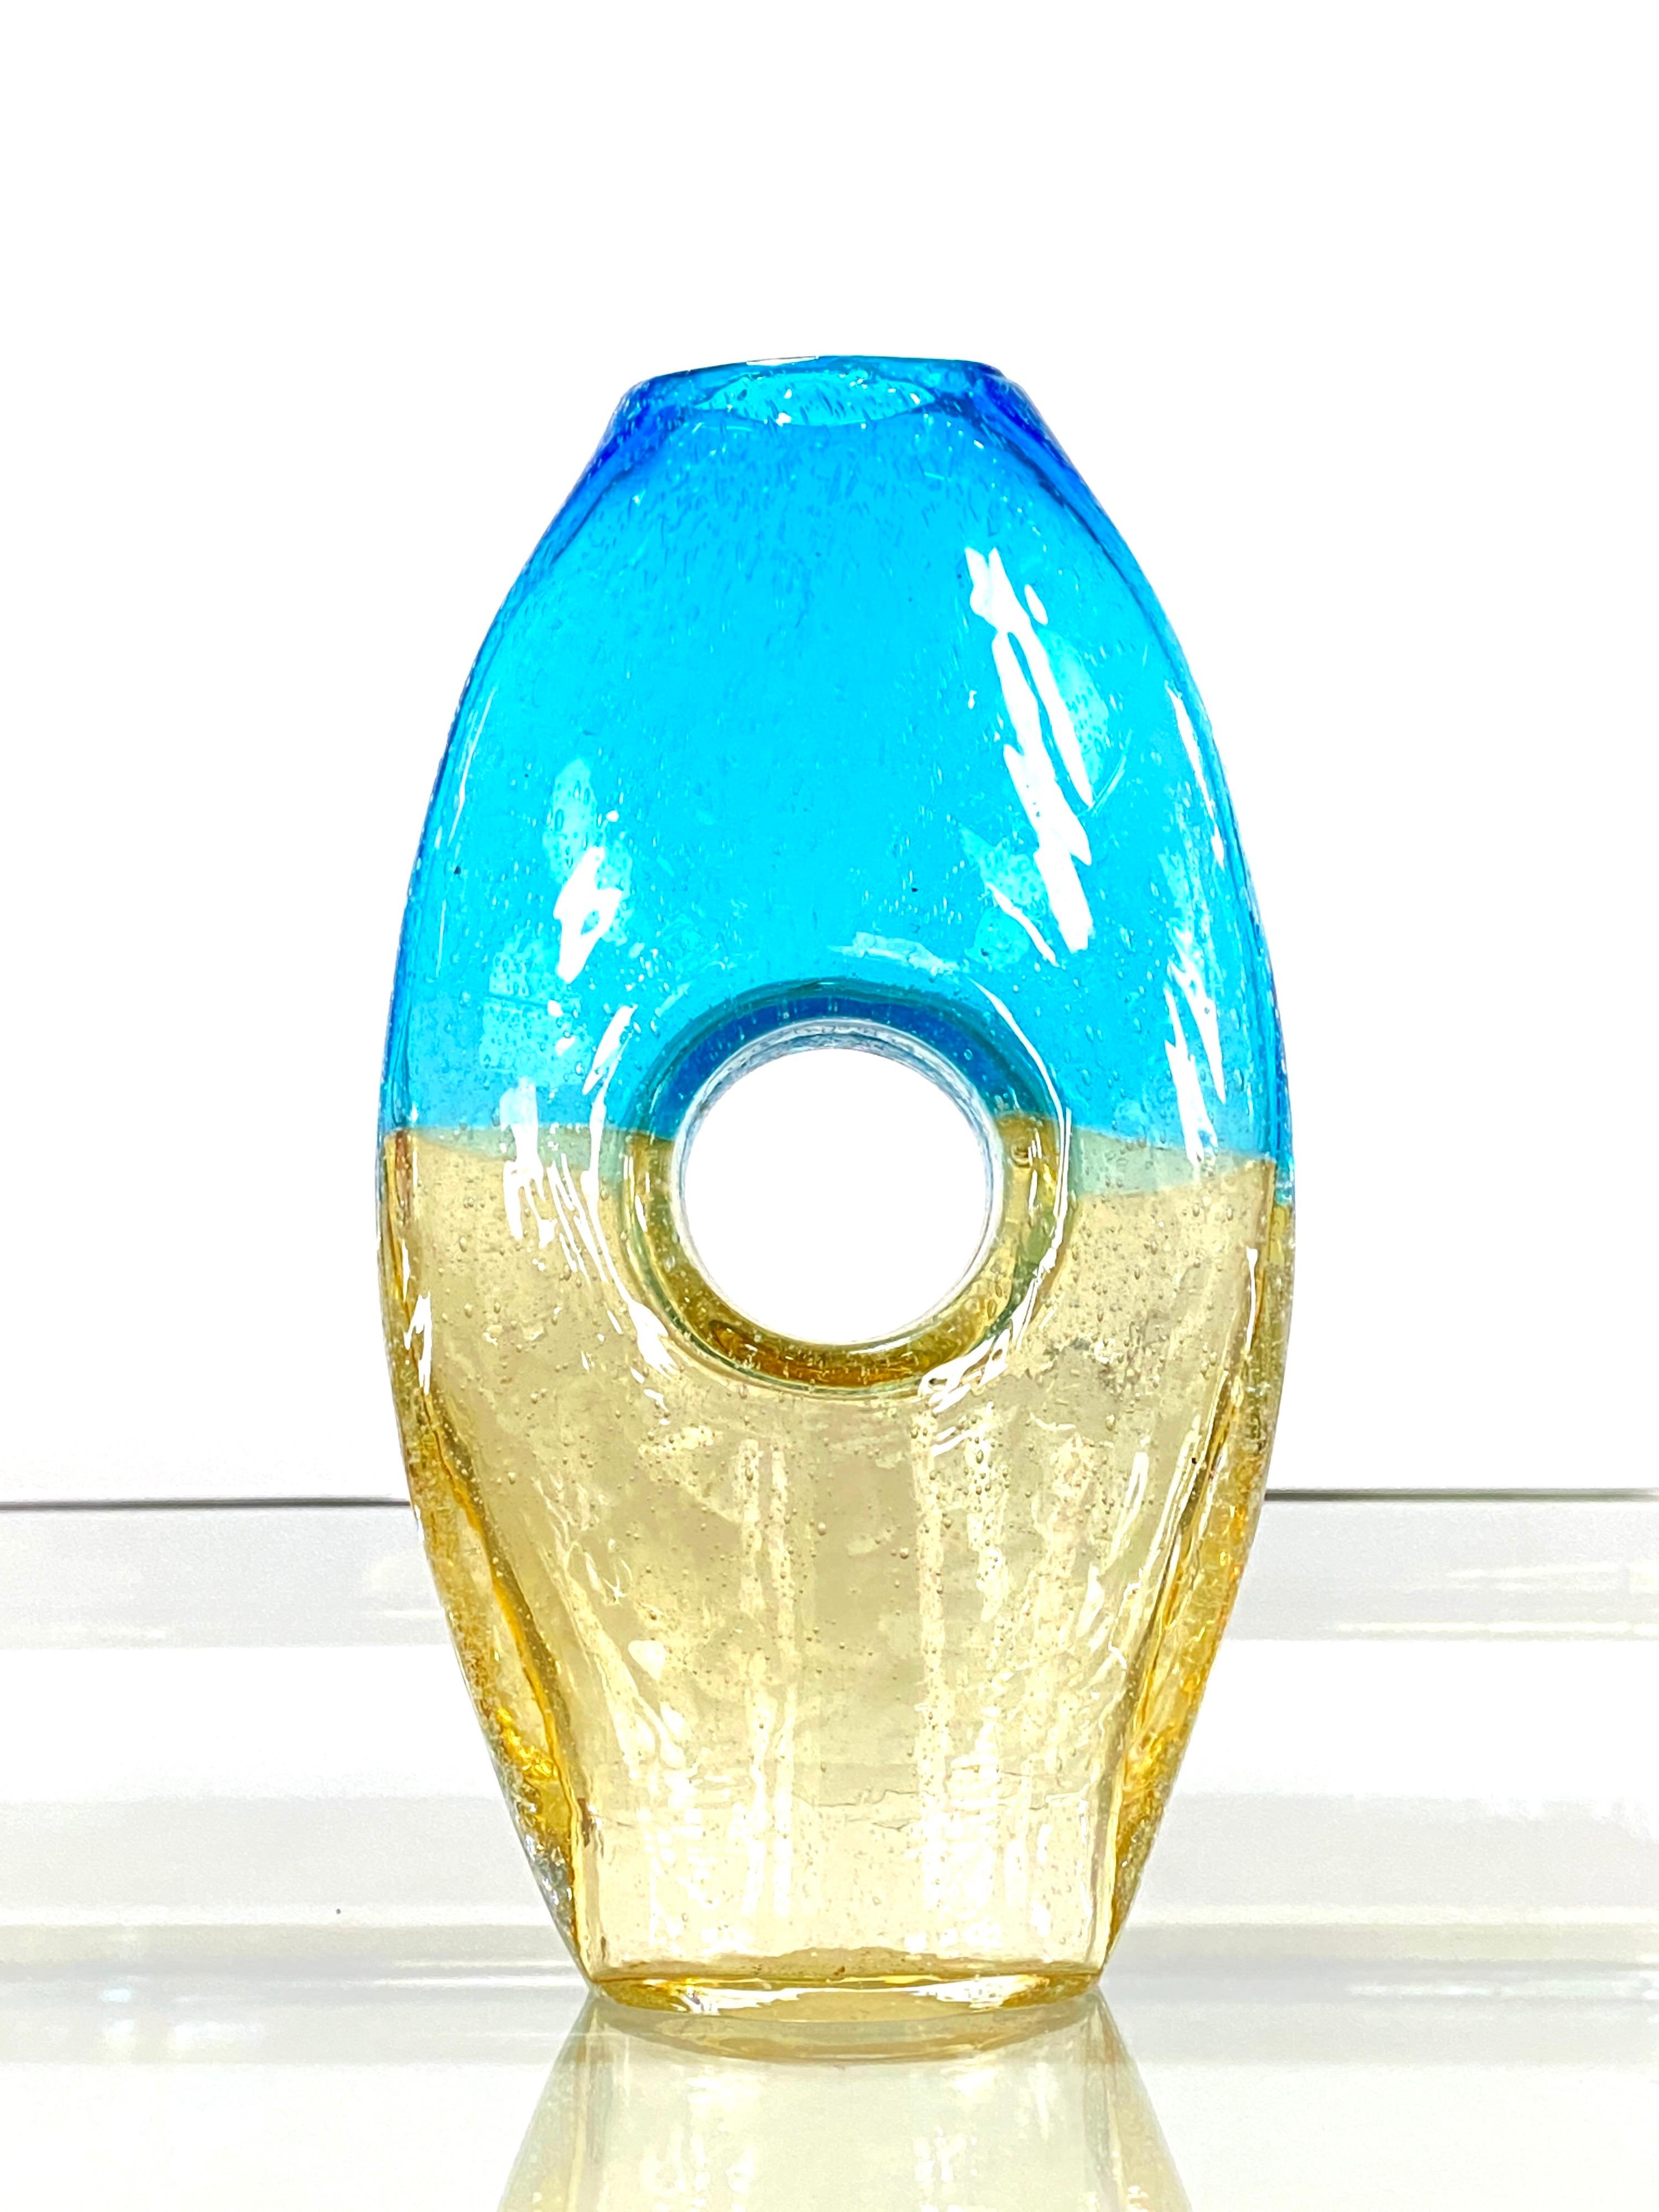 Gelb - Blaue Murano Forato Vase aus Italien.